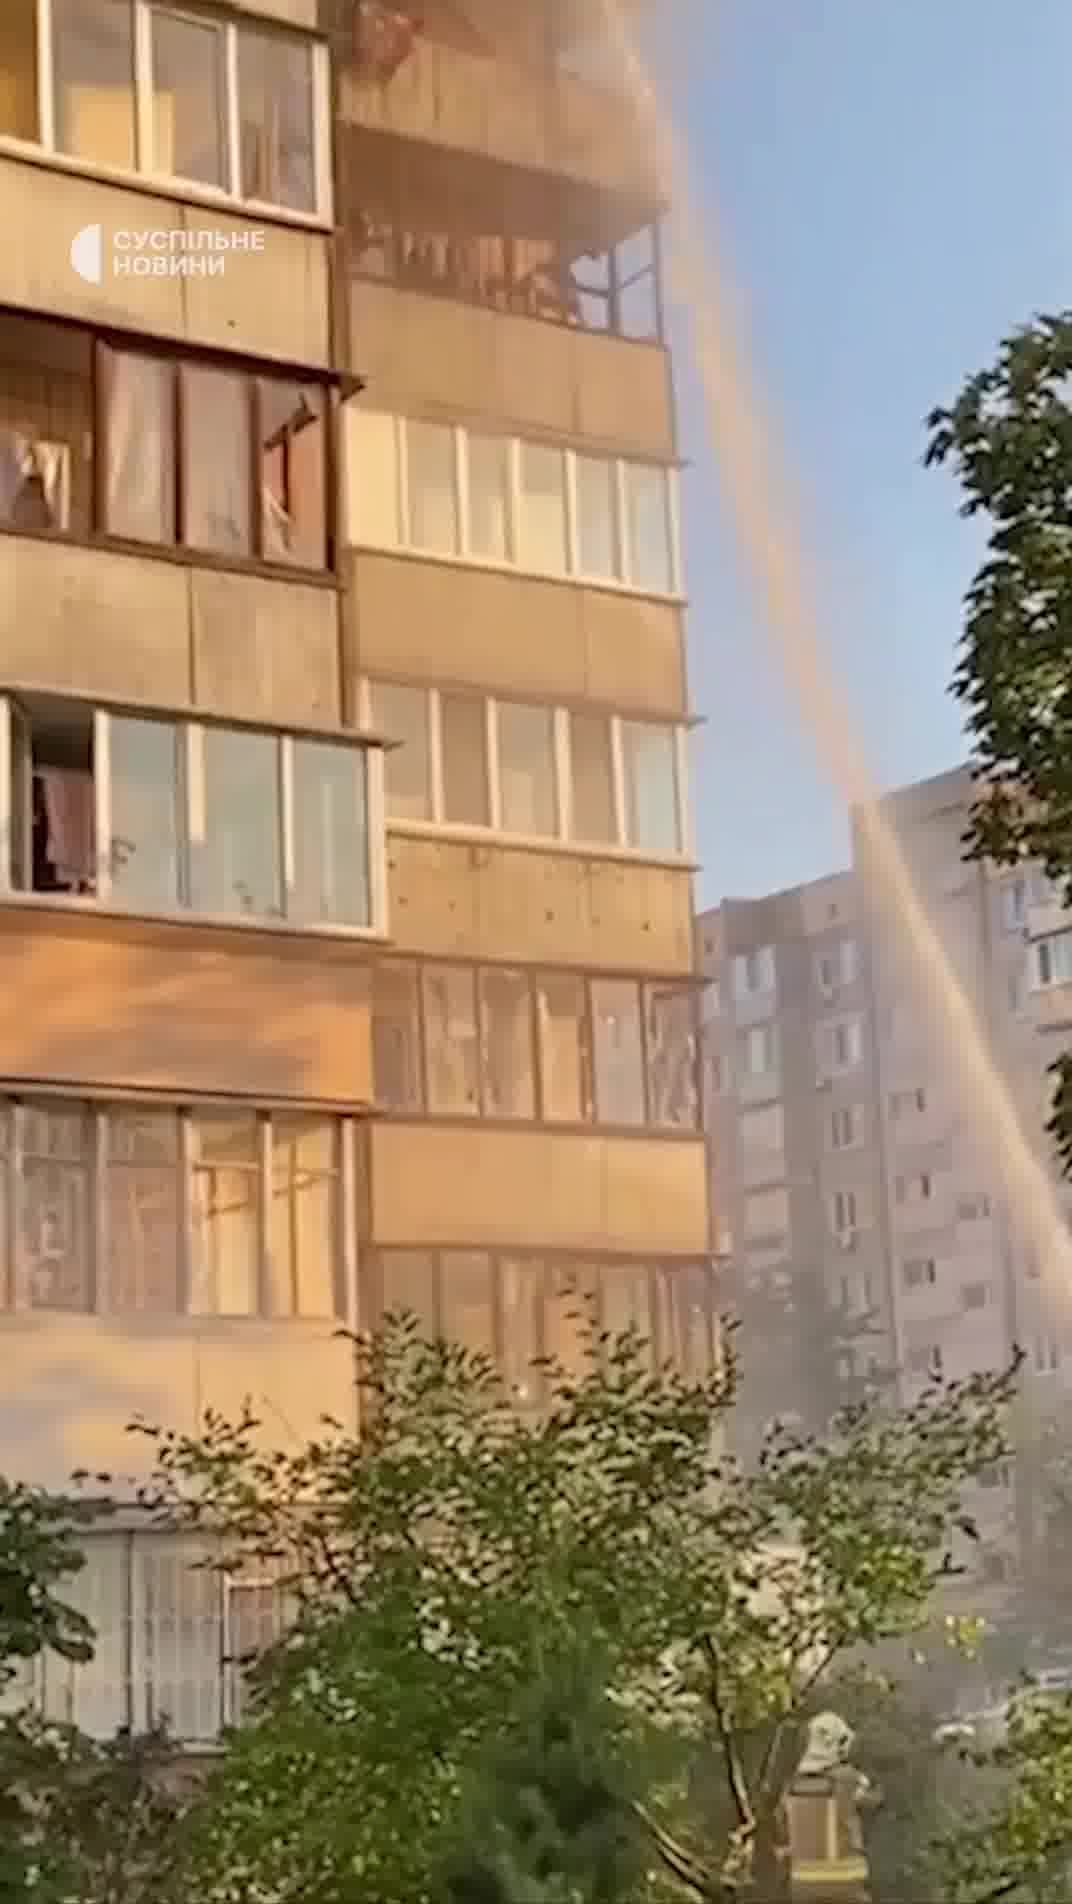 Edifici residencial danyat com a conseqüència de l'atac de míssils russos al districte d'Obolonsky de Kíev